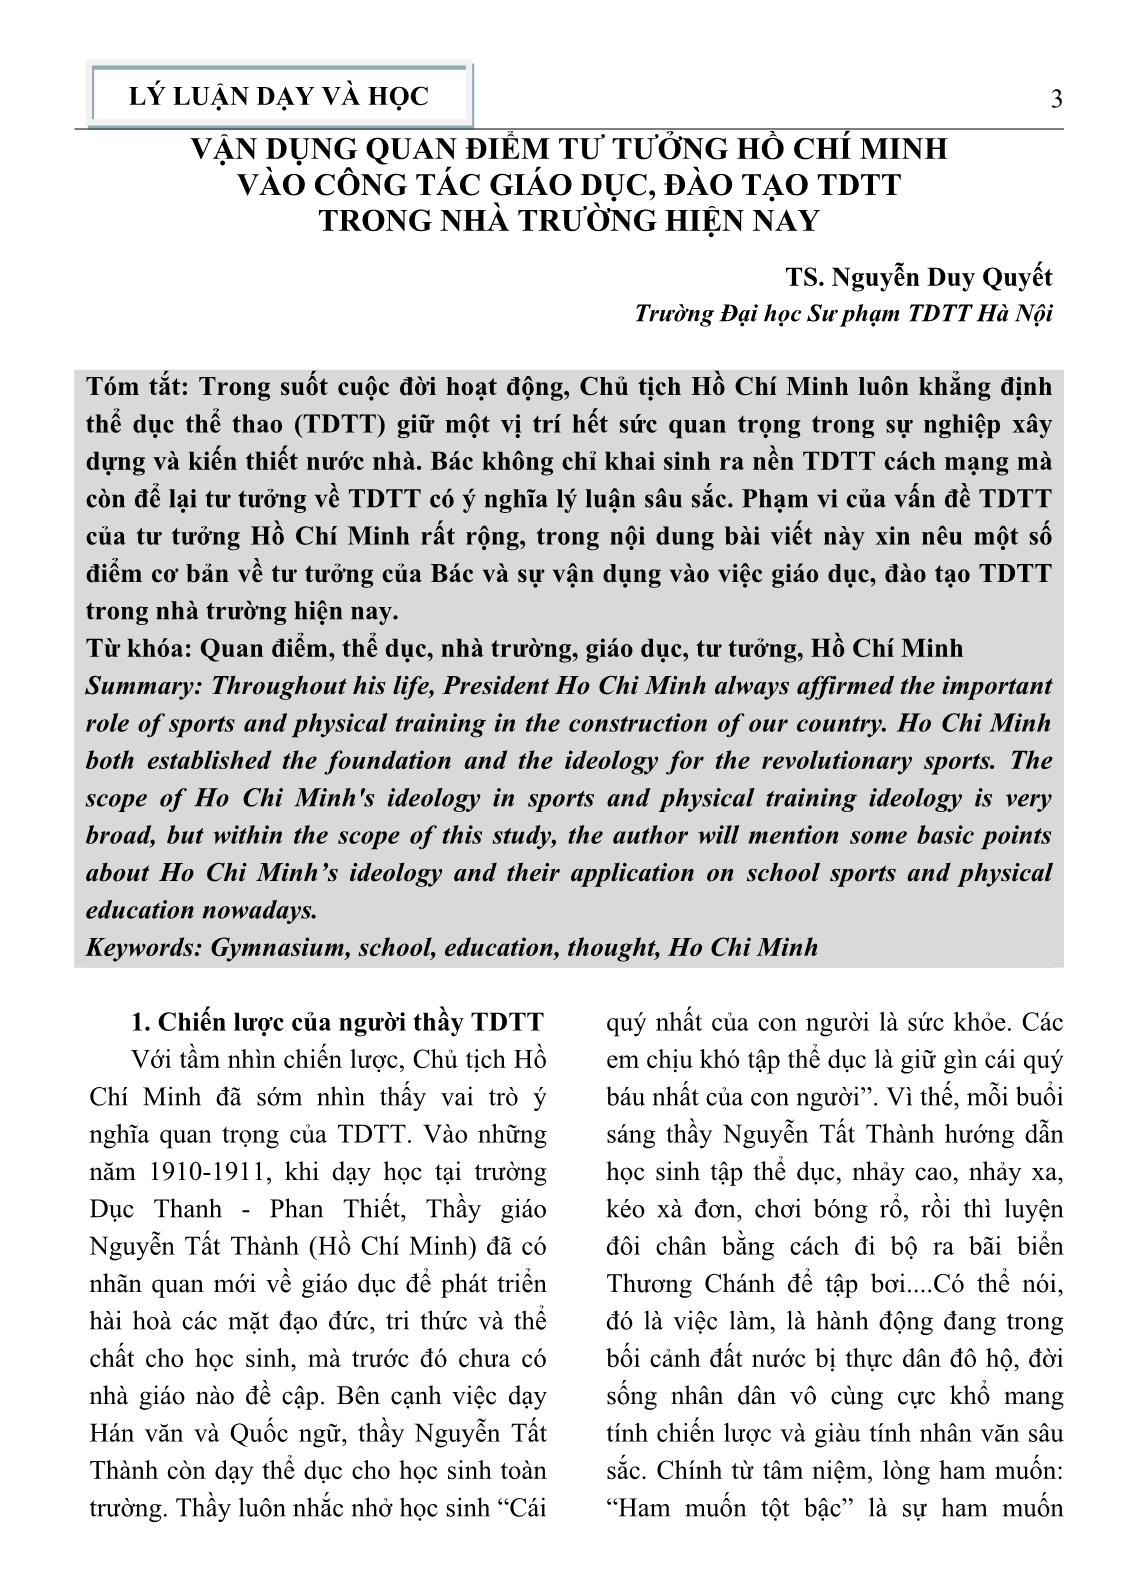 Vận dụng quan điểm tư tưởng Hồ Chí Minh vào công tác giáo dục, đào tạo thể dục thể thao trong nhà trường hiện nay trang 1